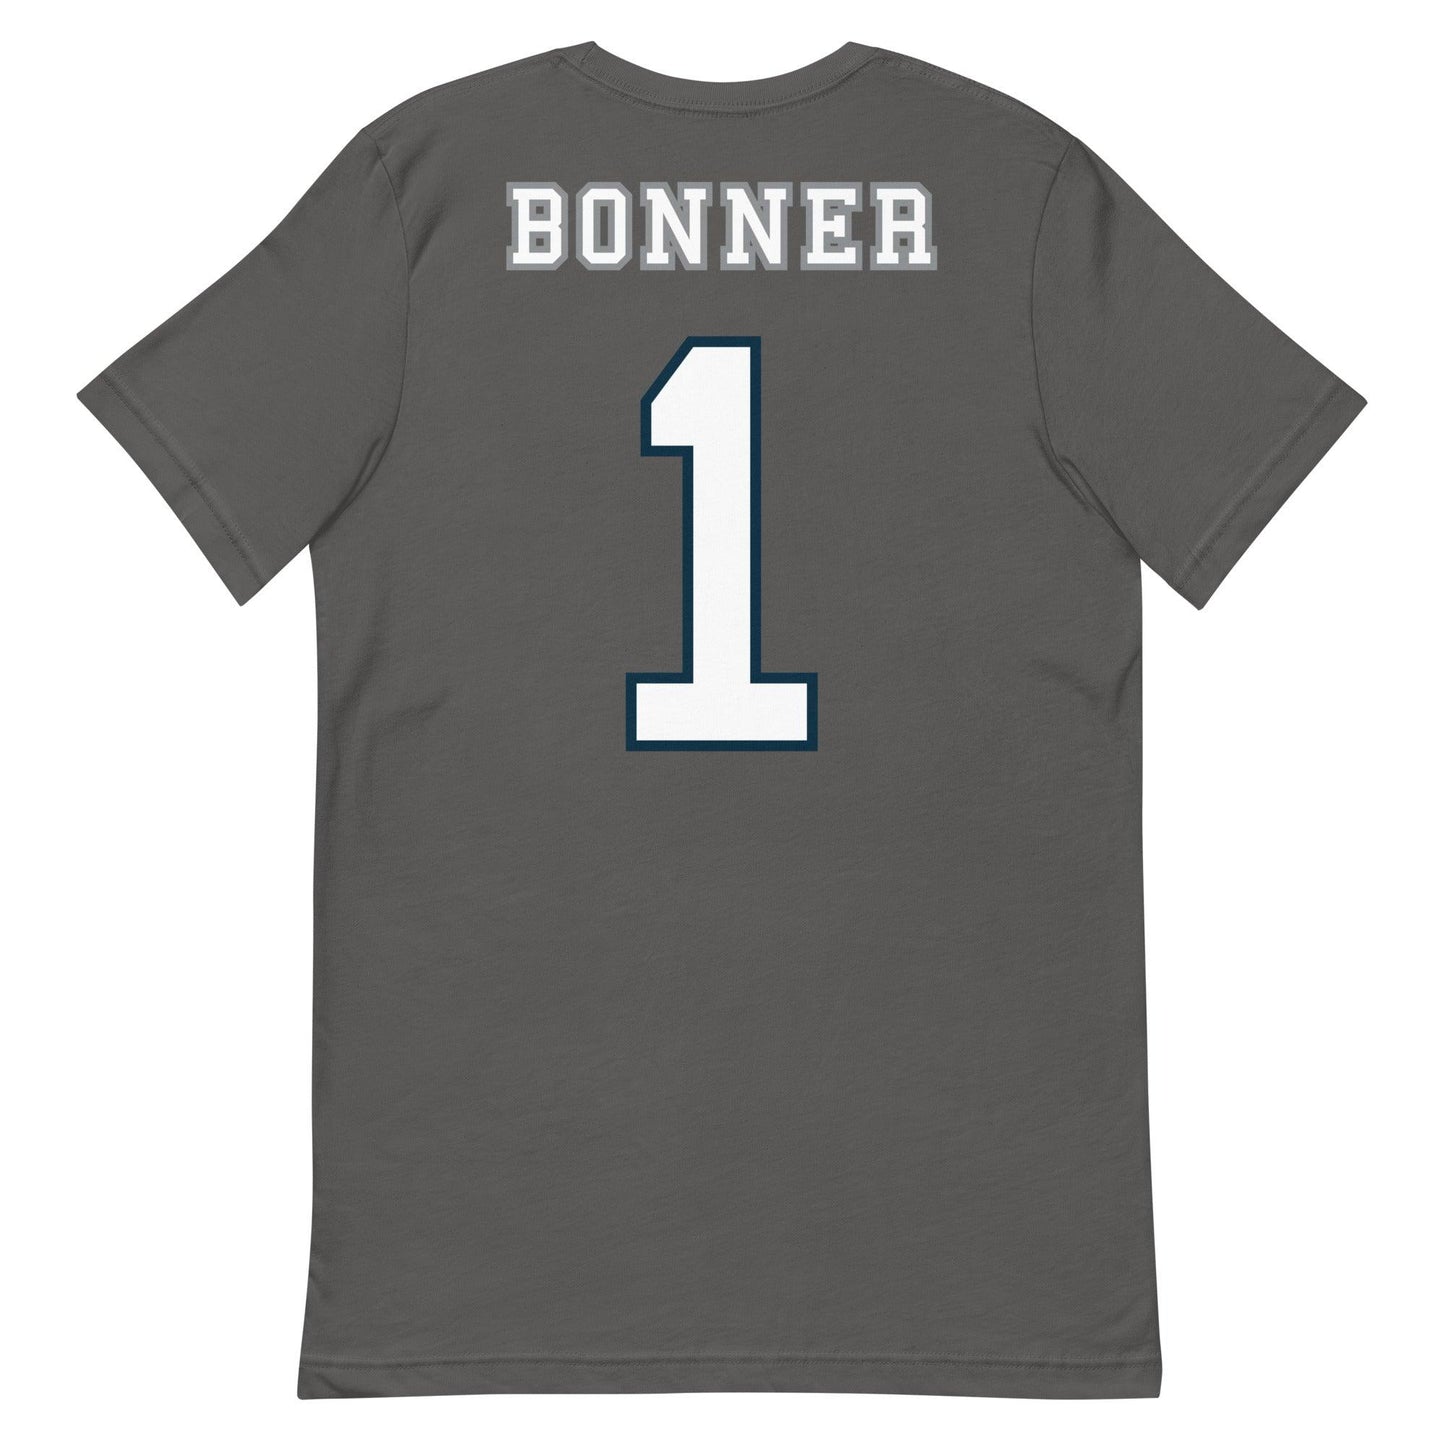 Logan "Bonner "Jersey" t-shirt - Fan Arch